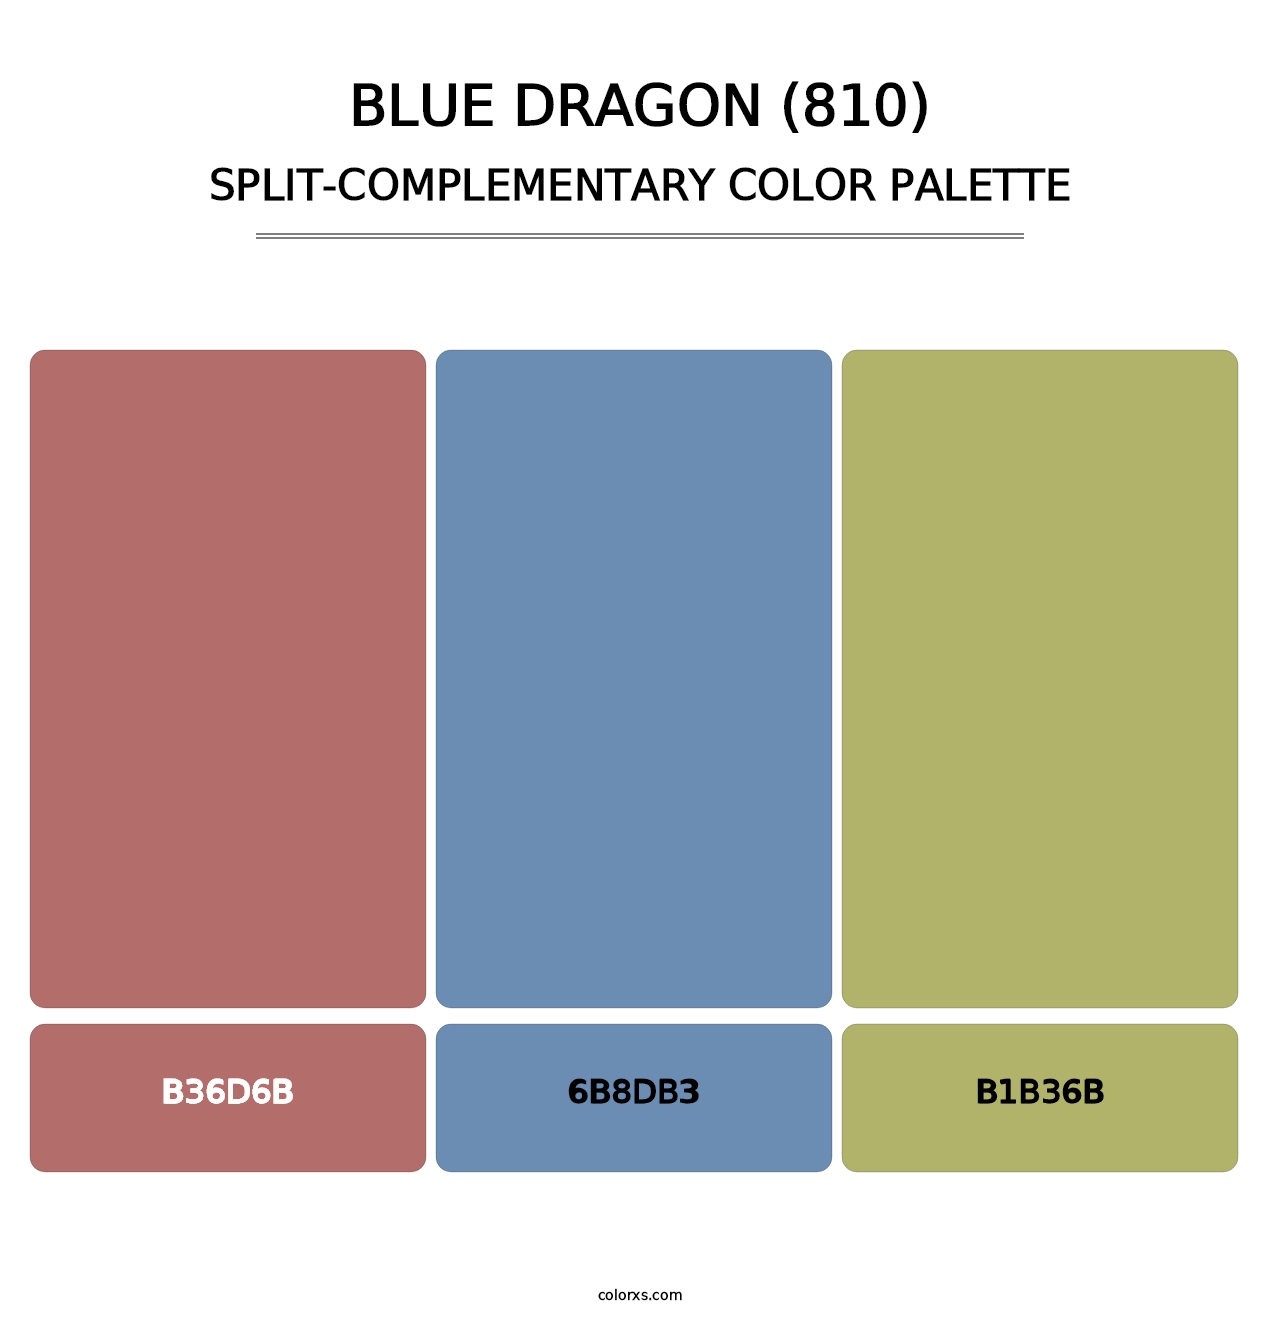 Blue Dragon (810) - Split-Complementary Color Palette